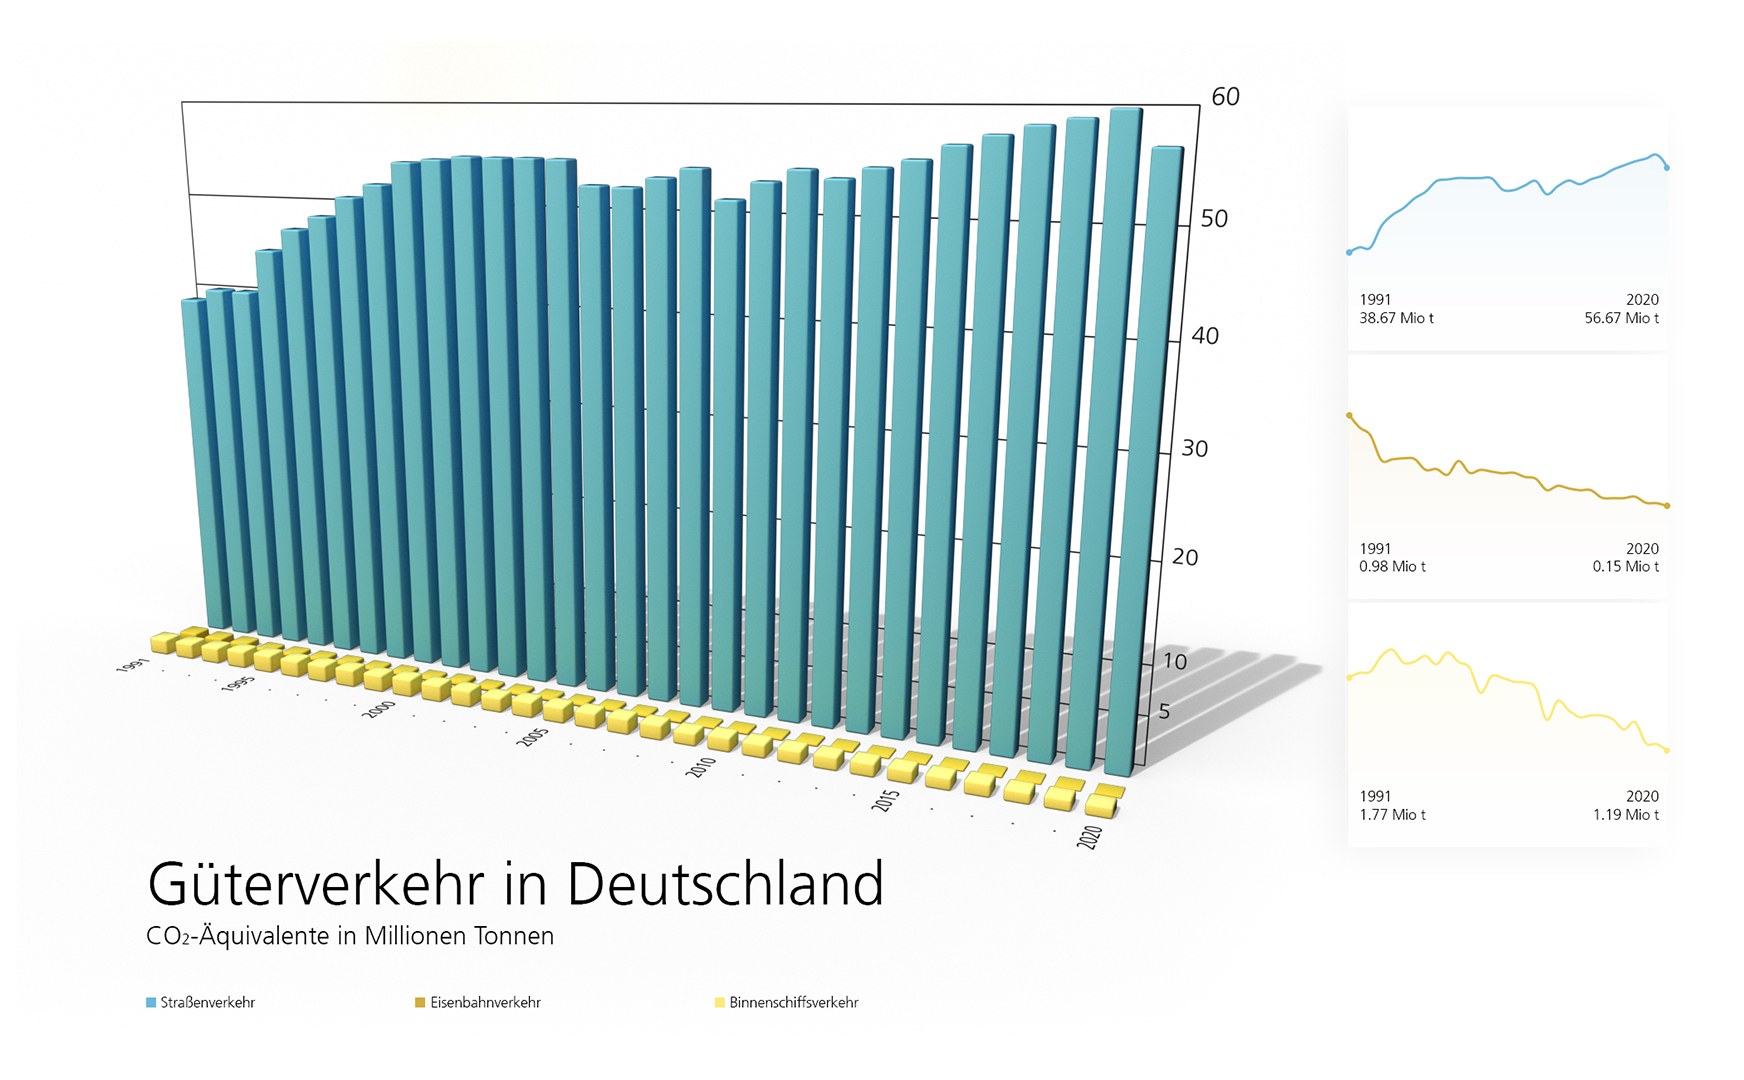 Güterverkehr in Deutschland: CO2-Äquivalente in Millionen Tonnen